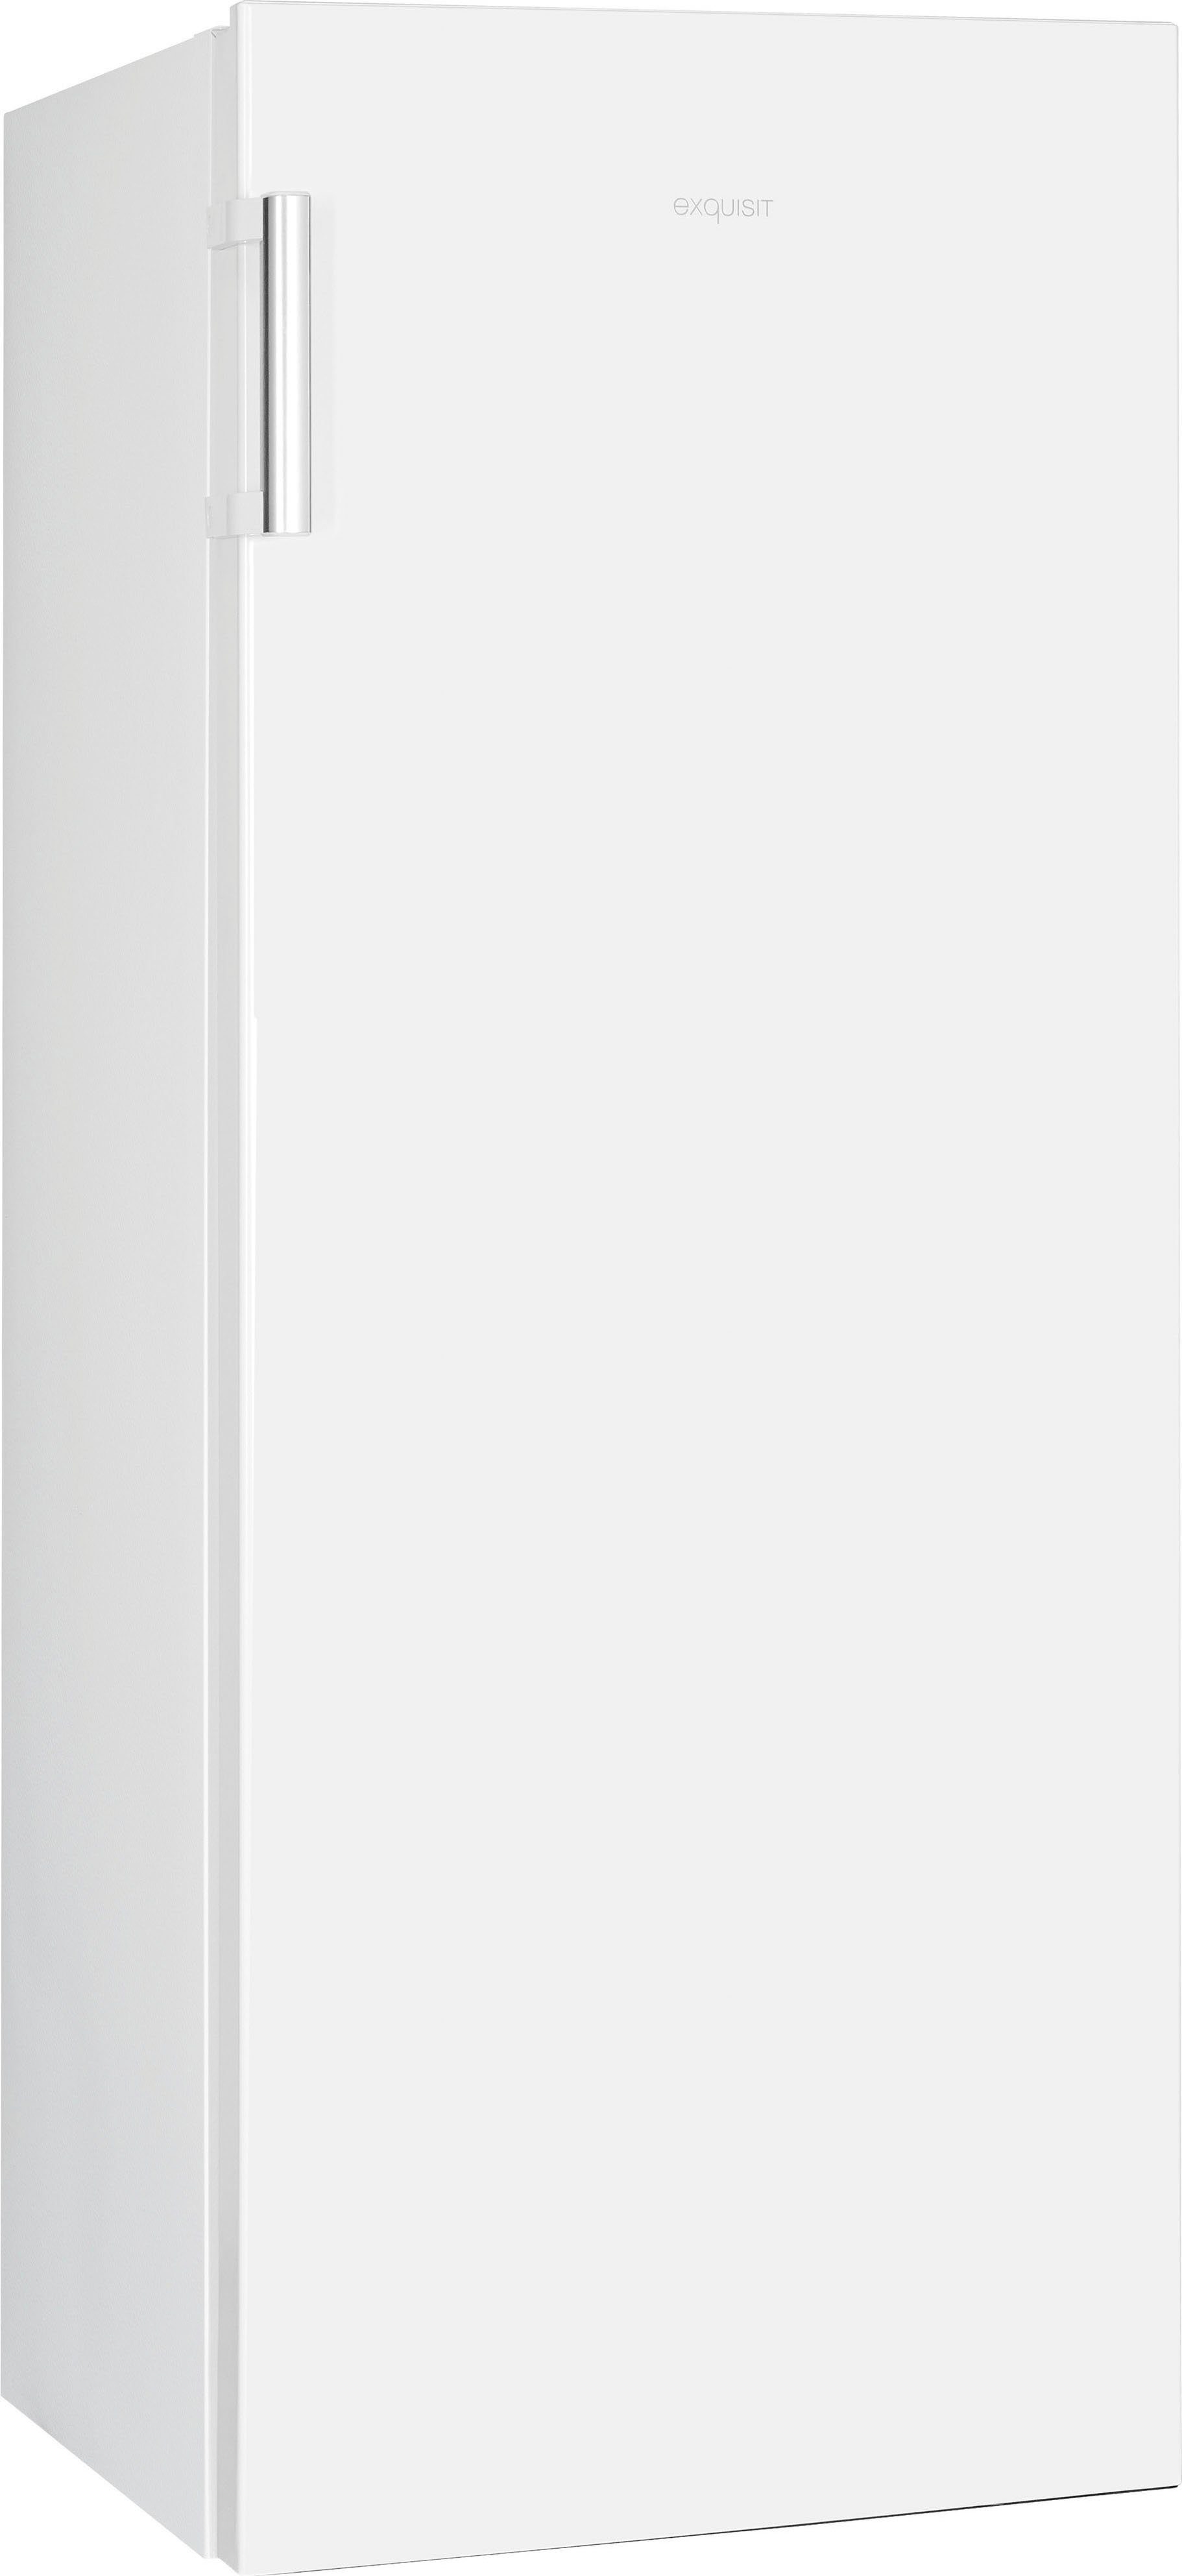 cm 55 Vollraumkühlschrank KS320-V-H-010E, cm exquisit breit weiß hoch, 143,4